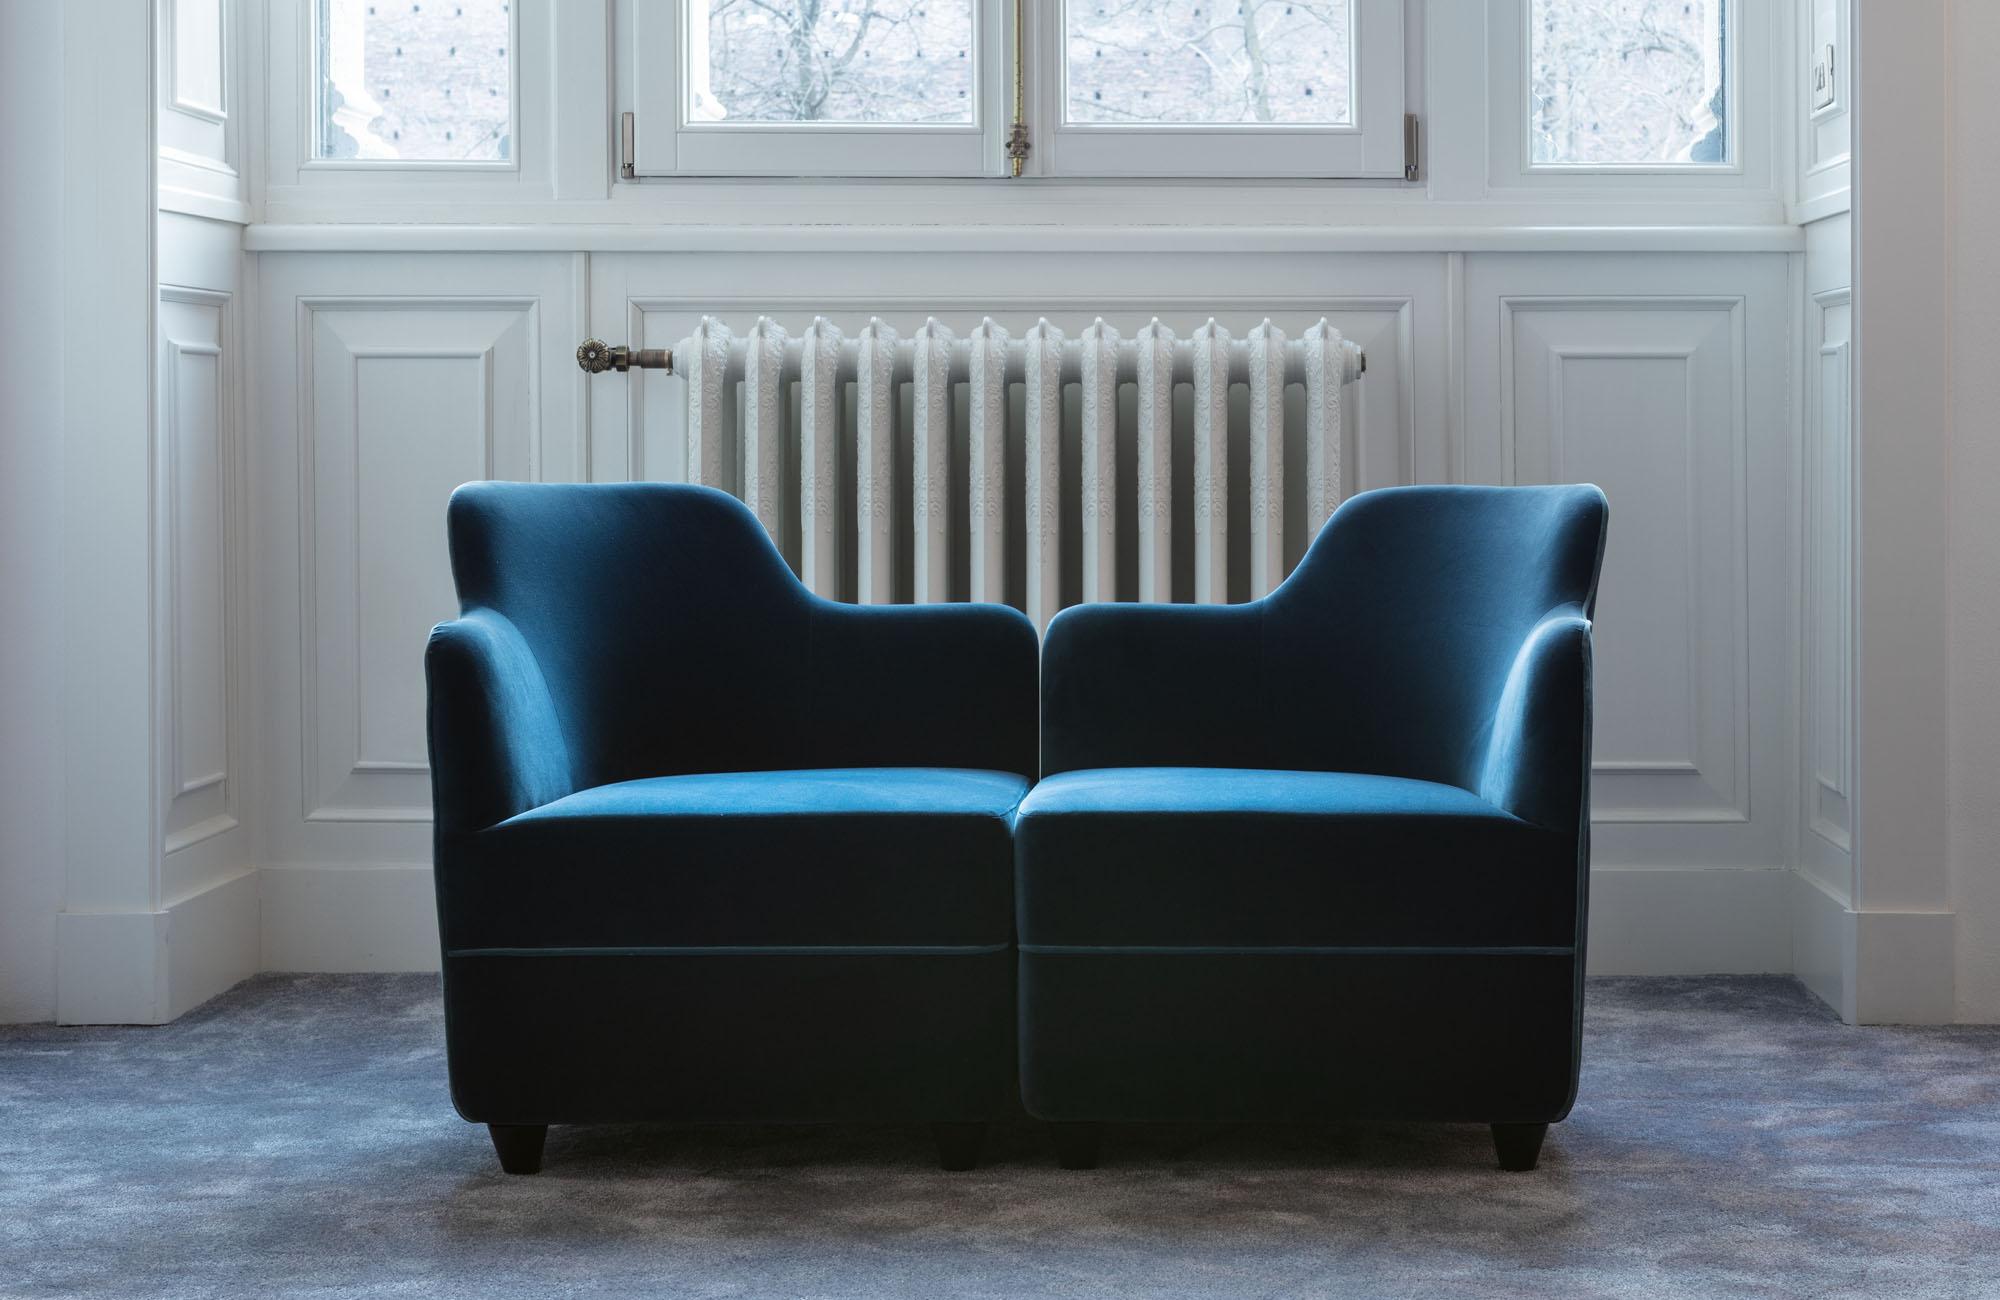 Petit fauteuil avec revêtement en velours dans une large gamme de couleurs. Il peut être associé à d'autres fauteuils ou modules pouf pour créer des combinaisons plus grandes et modulaires.
Corrado Corradi Dell'acqua a réinventé en 1963 le fauteuil